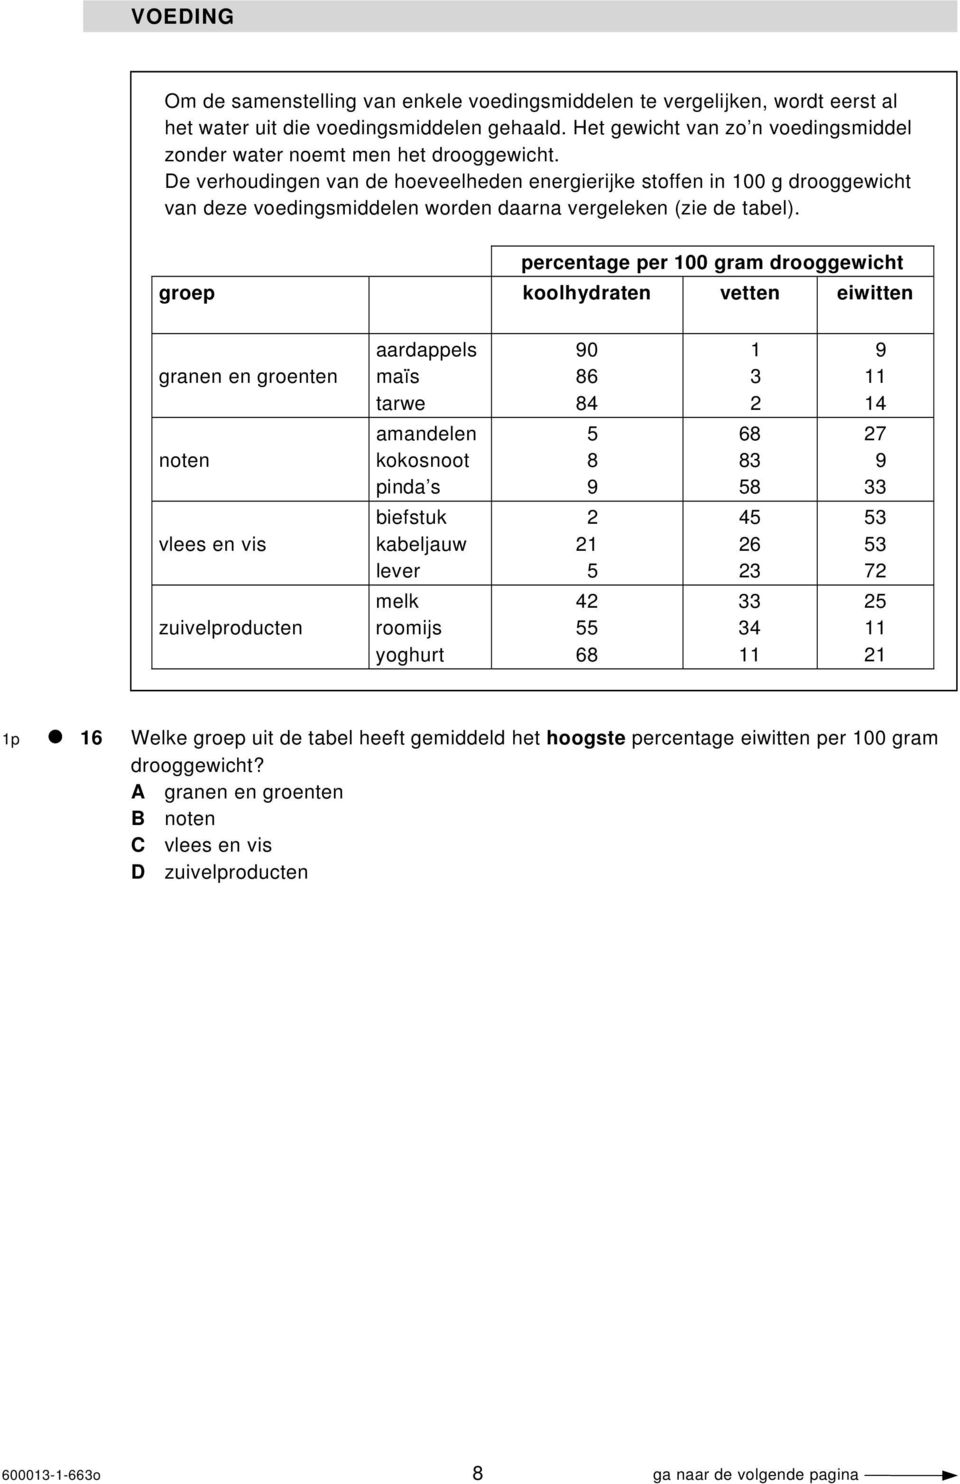 De verhoudingen van de hoeveelheden energierijke stoffen in 100 g drooggewicht van deze voedingsmiddelen worden daarna vergeleken (zie de tabel).